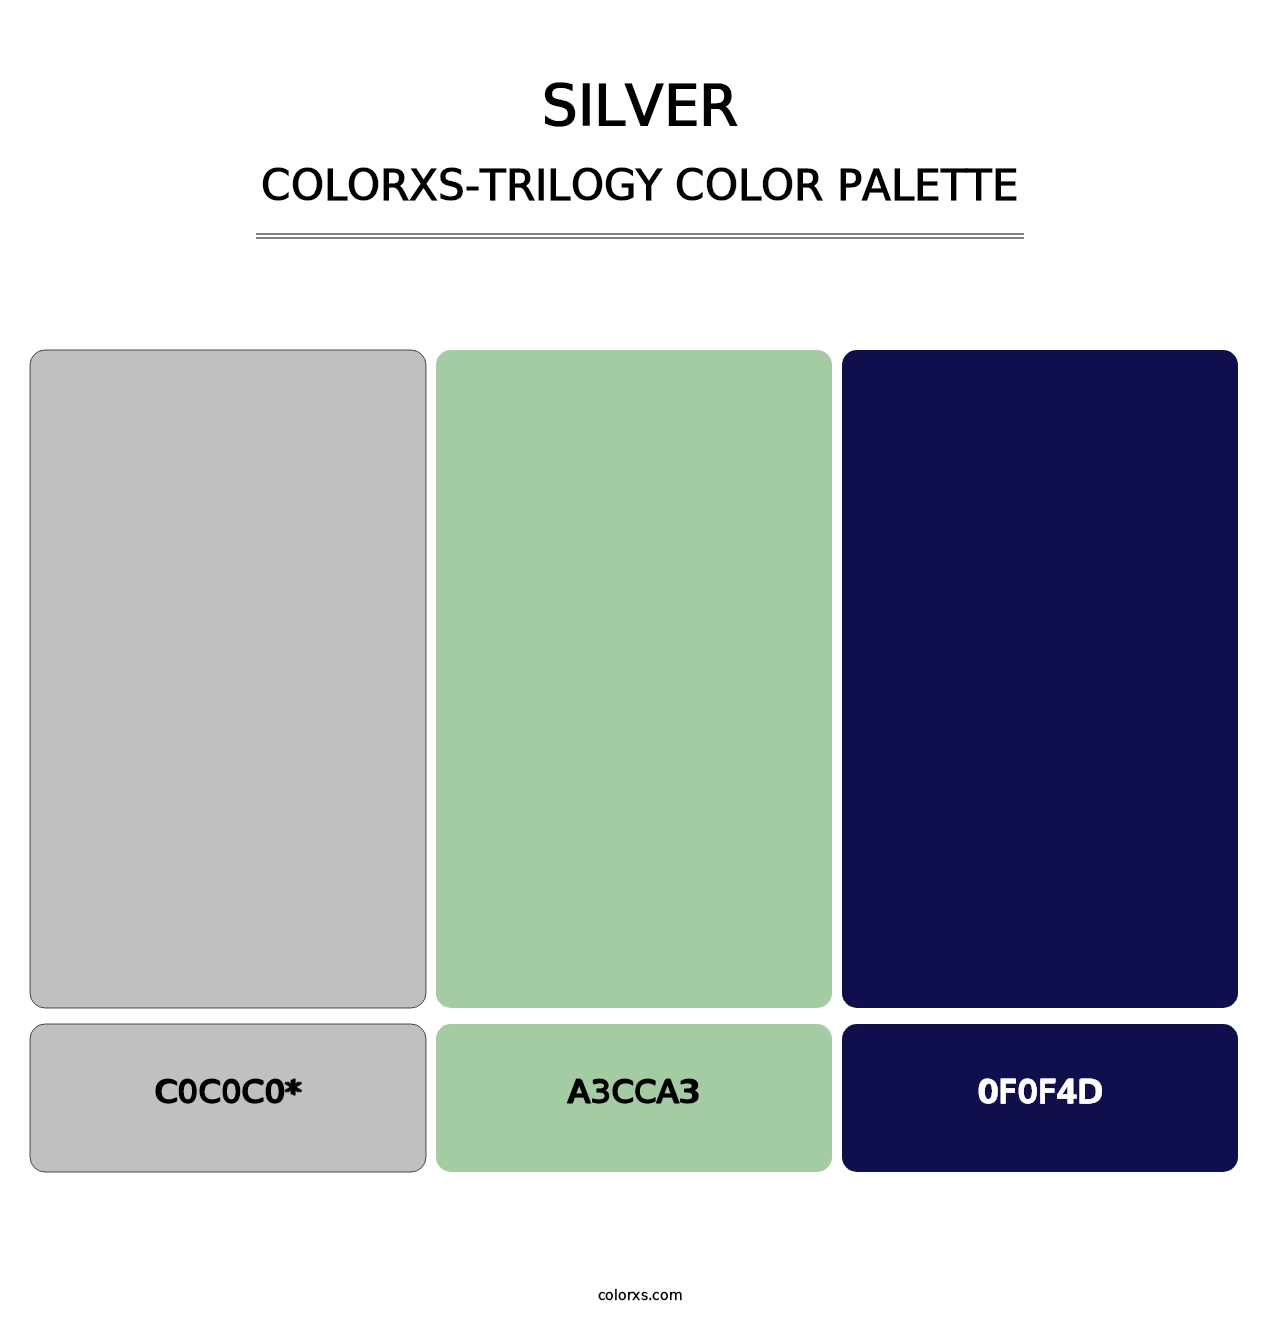 Silver - Colorxs Trilogy Palette